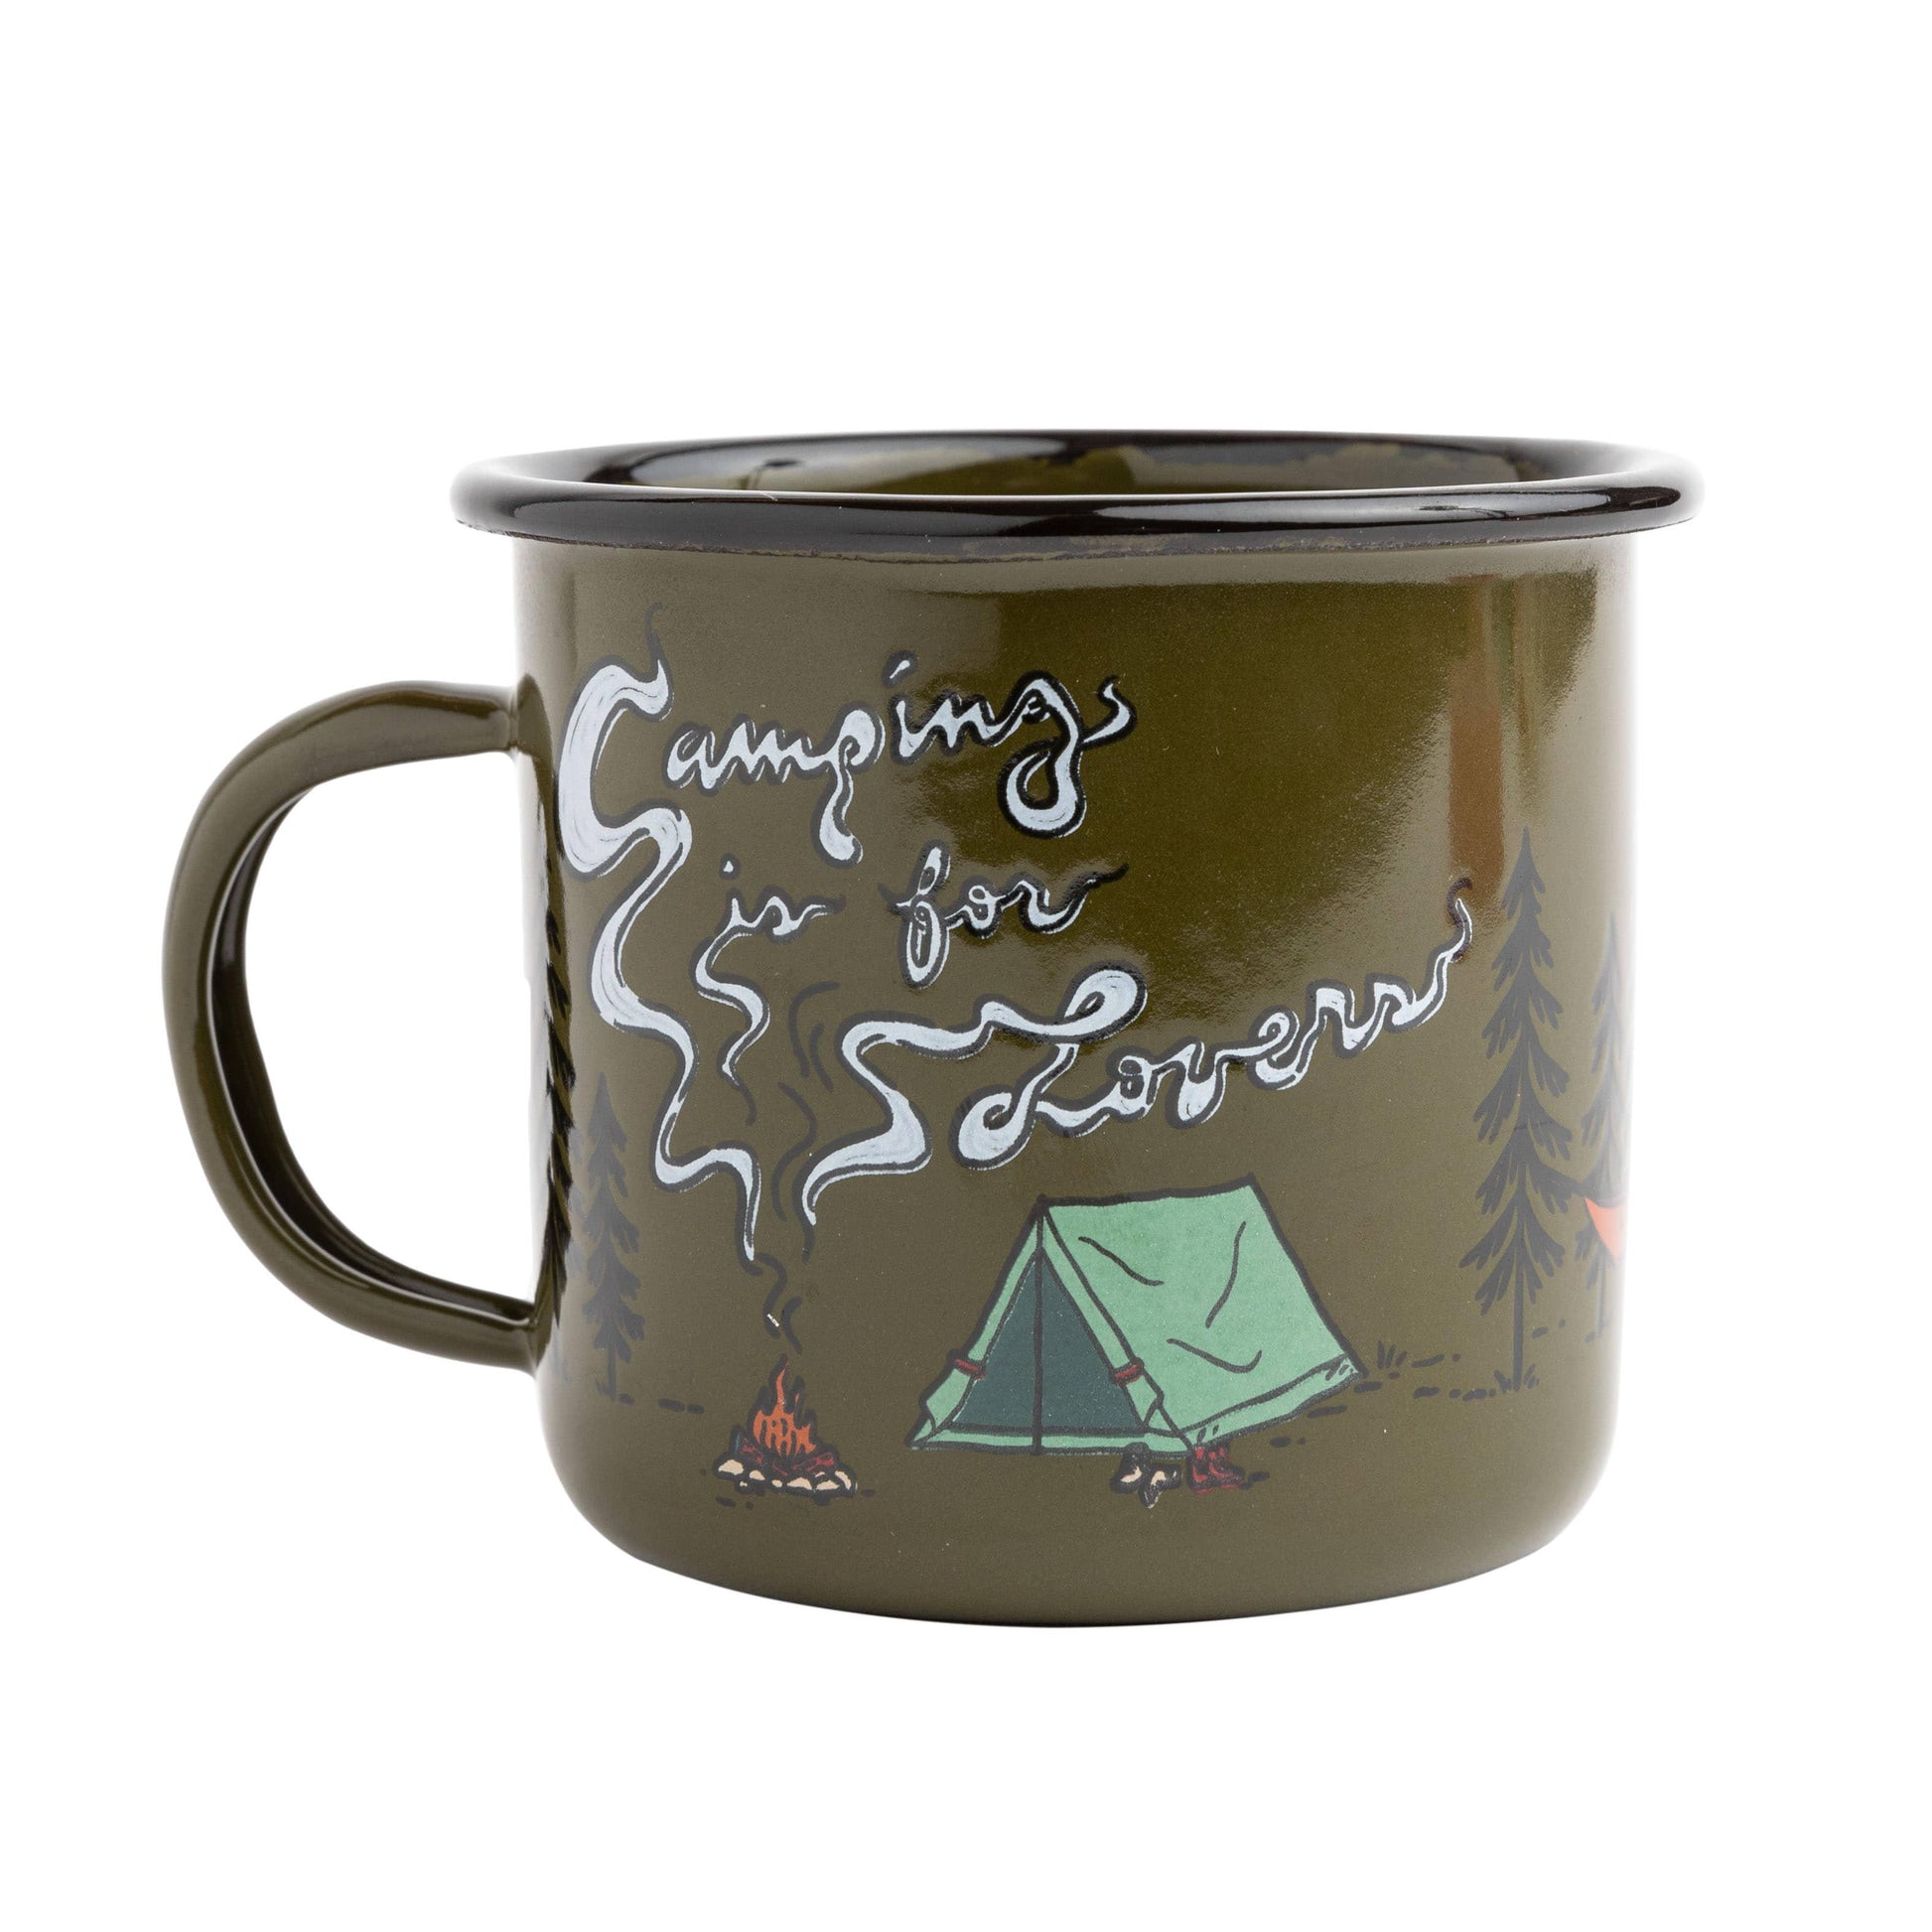 https://www.treklightgear.com/cdn/shop/files/camping-is-for-lovers-enamel-mug-trek-light-gear.jpg?v=1693944439&width=1946